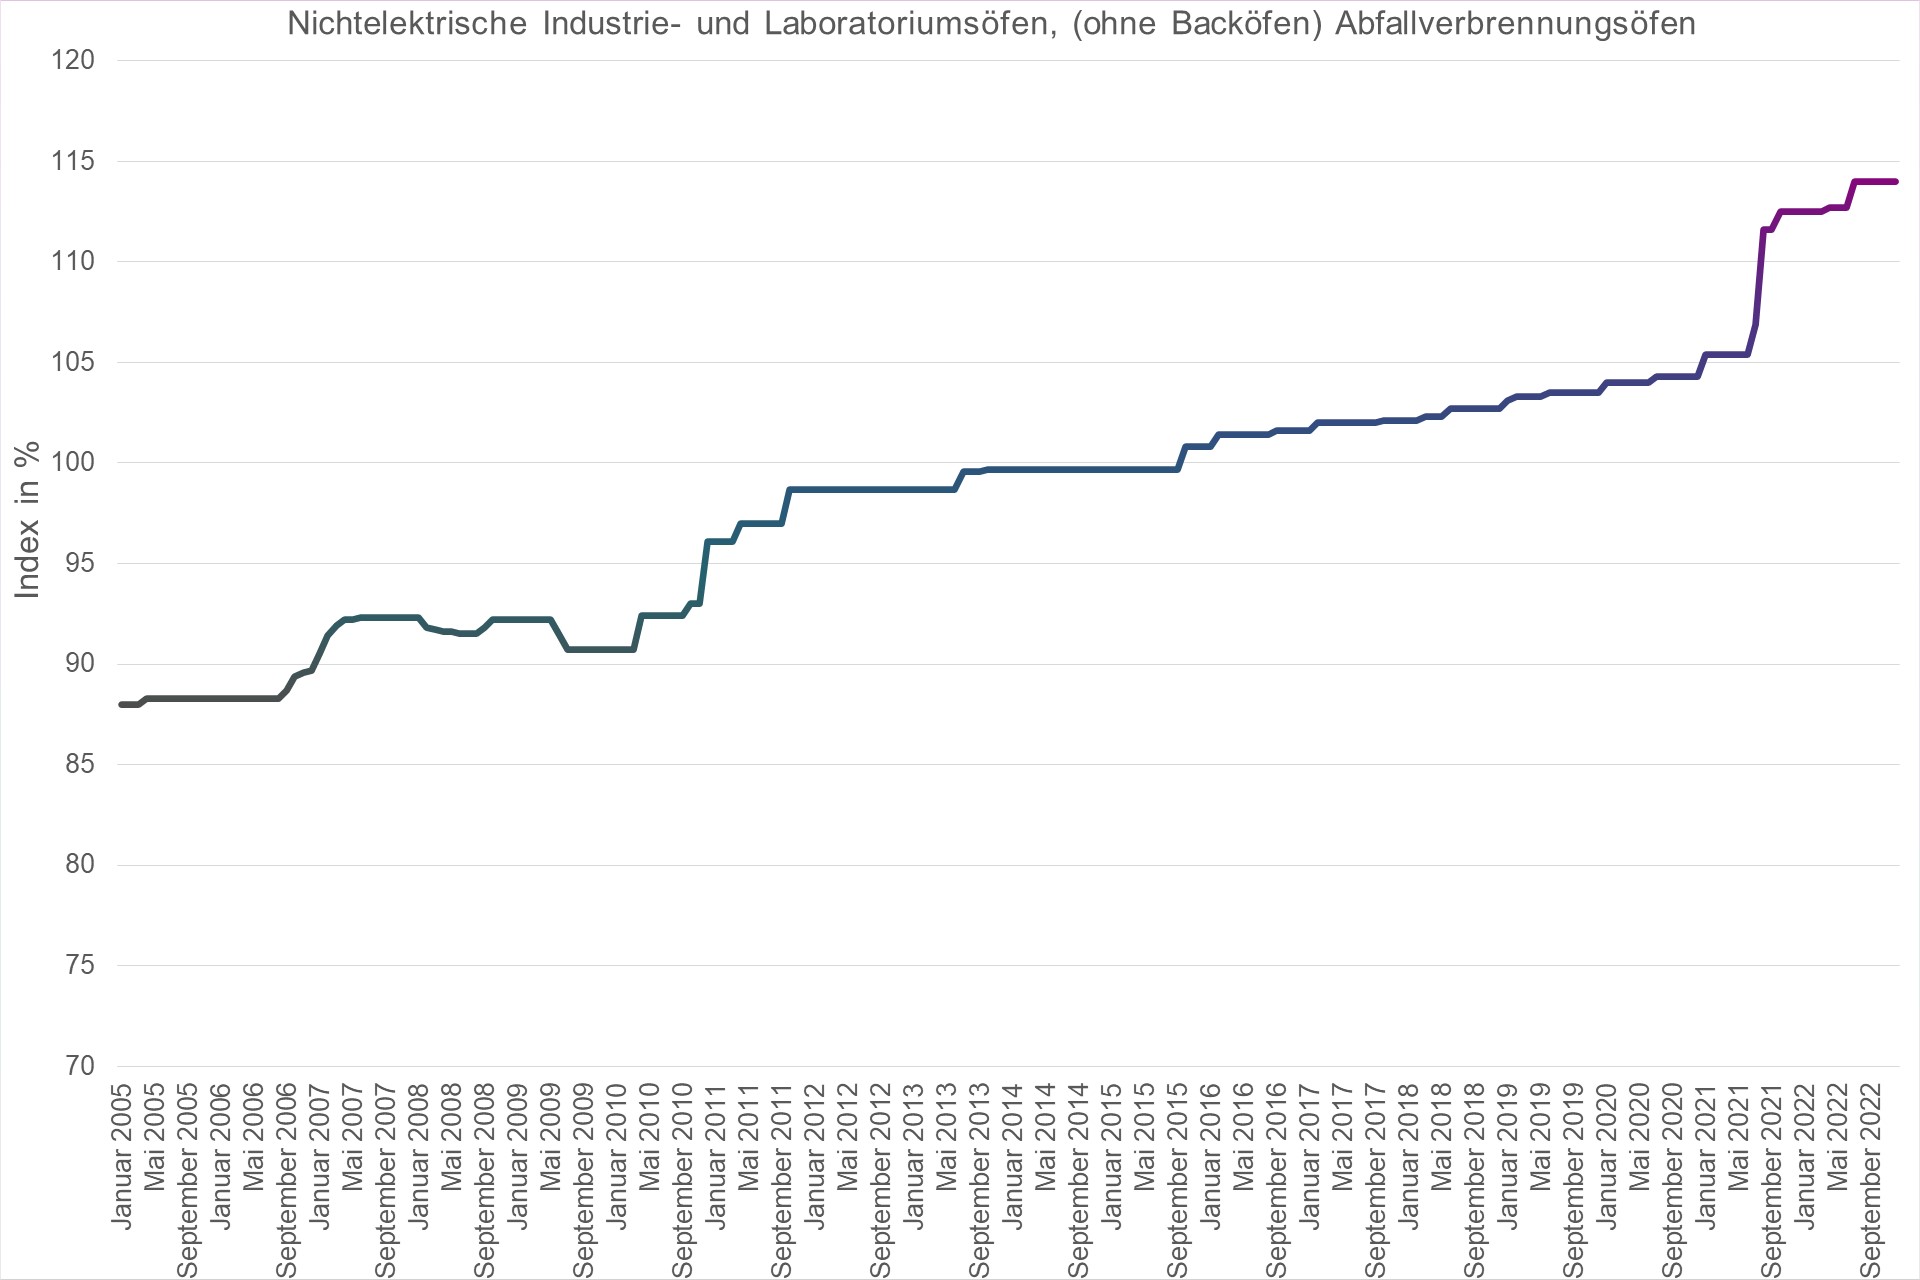 Grafik Preisindex Nichtelektrische Industrie- und Laboratoriumsöfen, (ohne Backöfen) Abfallverbrennungsöfen